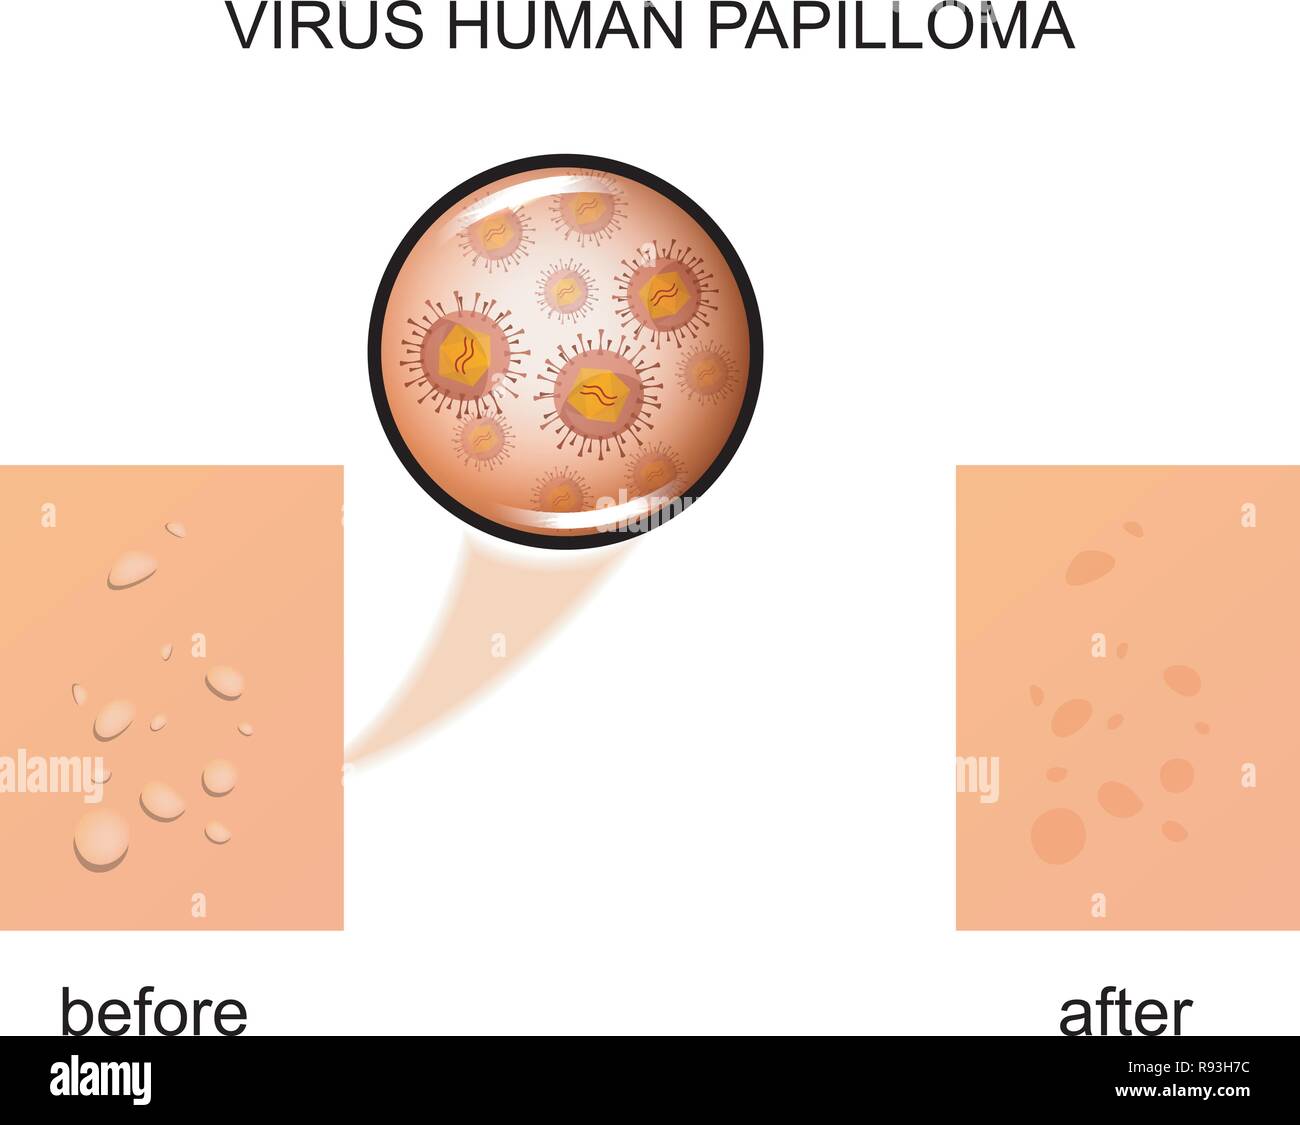 Illustrazione di vettore di papilloma virus umano Illustrazione Vettoriale